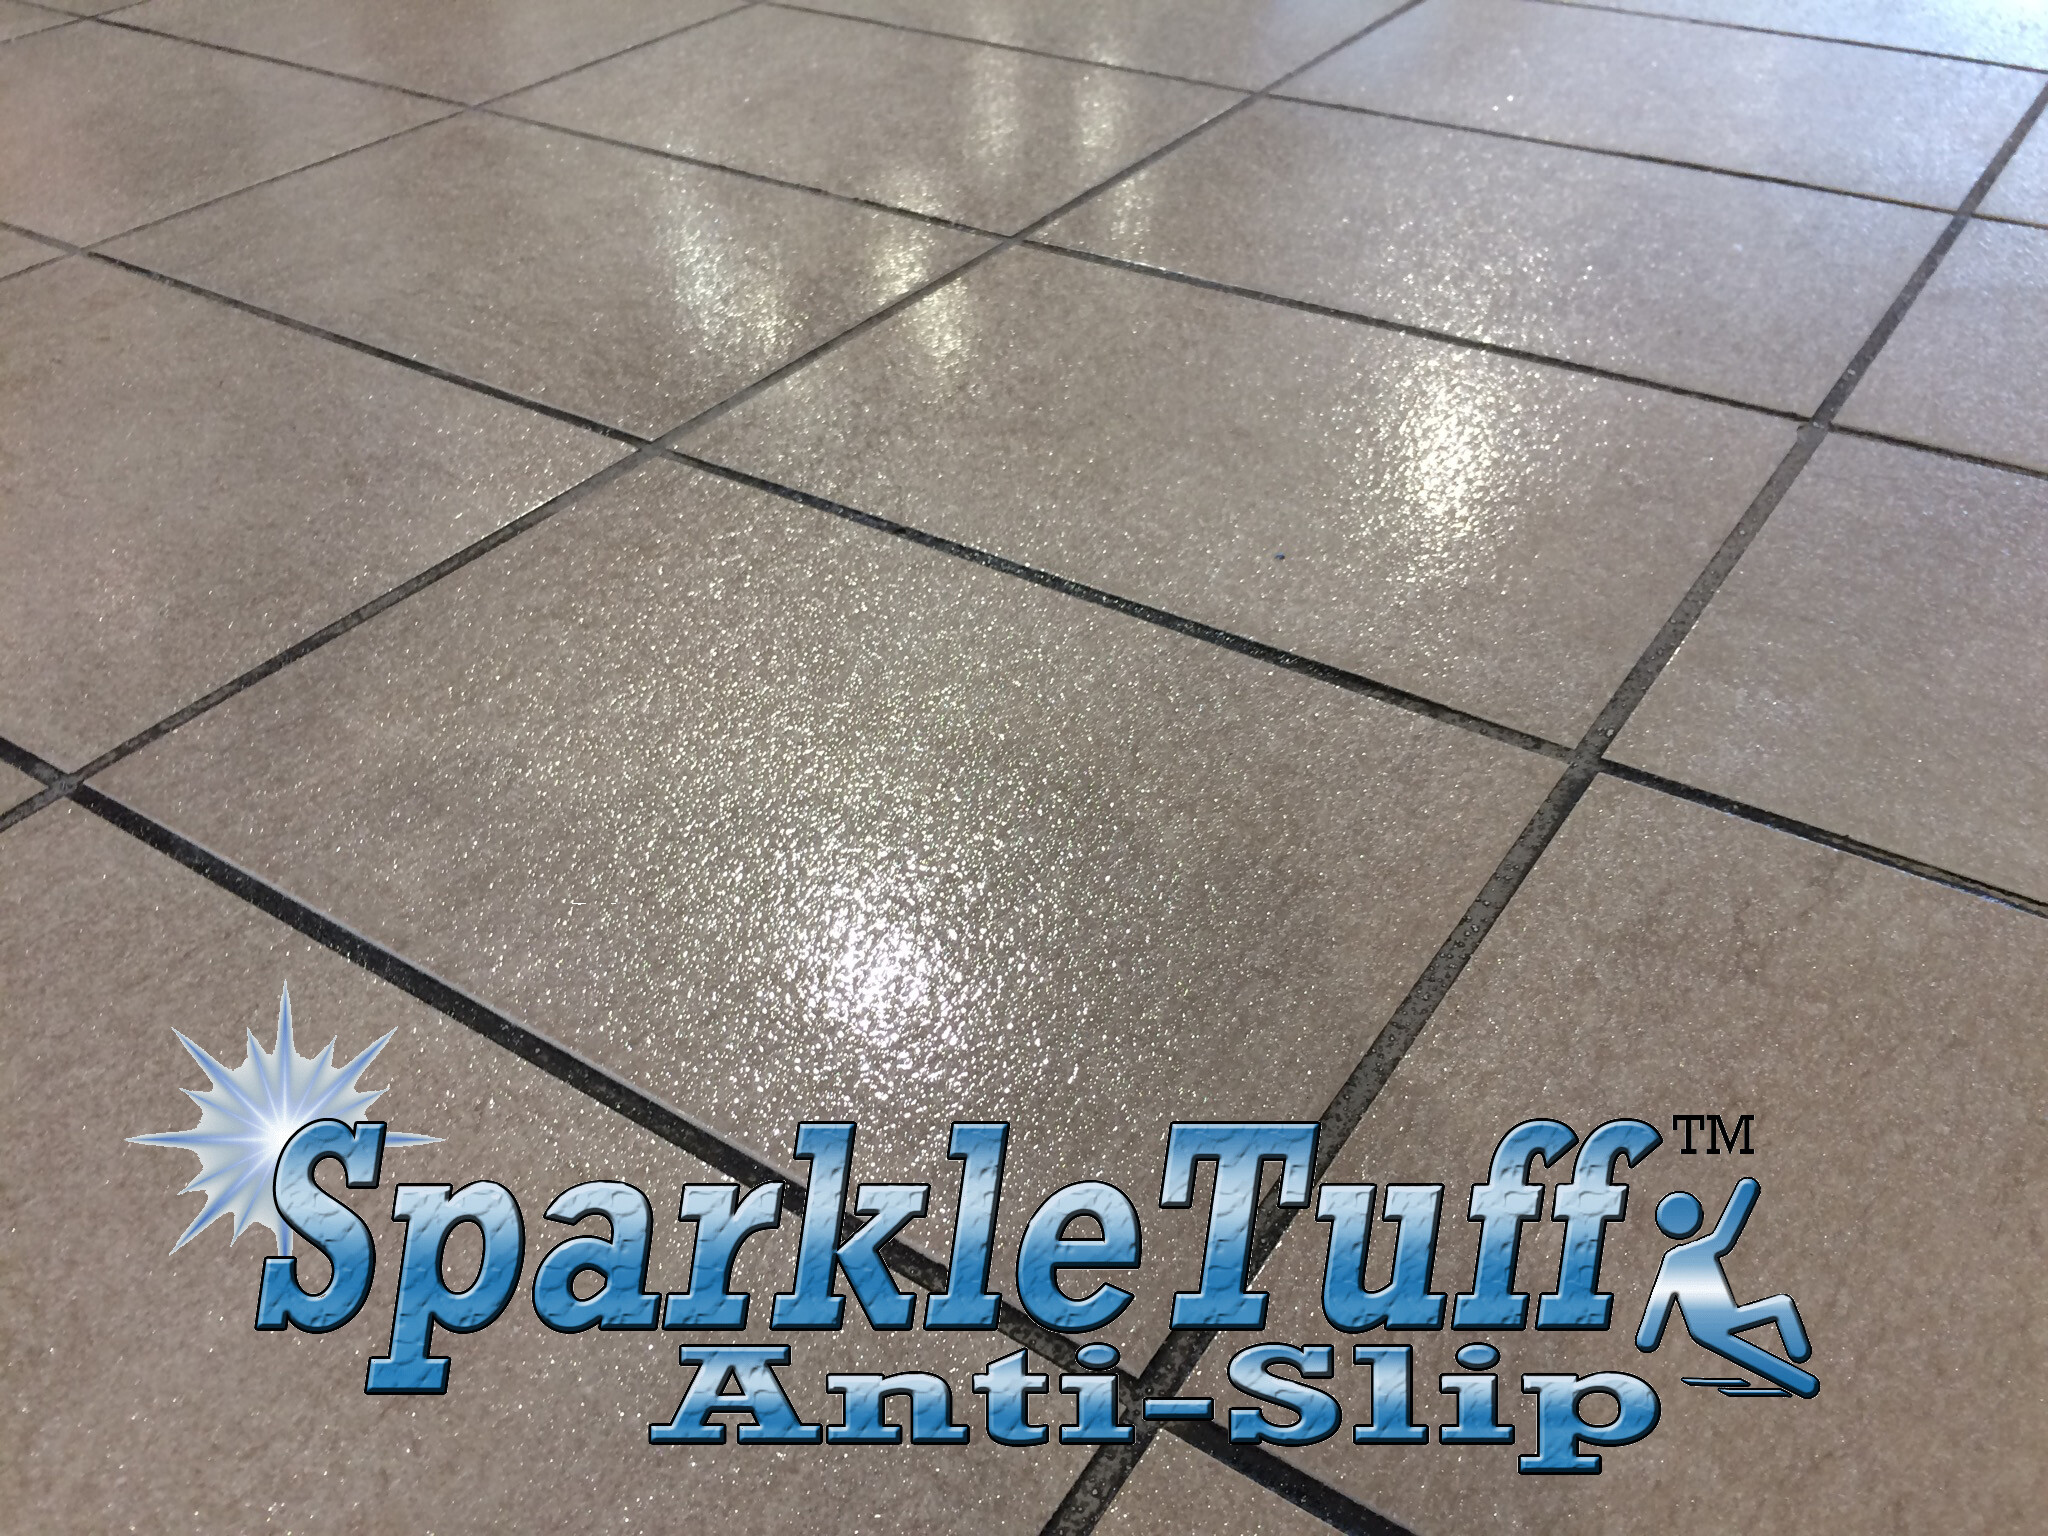 Sparkletuff Anti Slip Floor Coating, Why Are My Floor Tiles Slippery When Wet